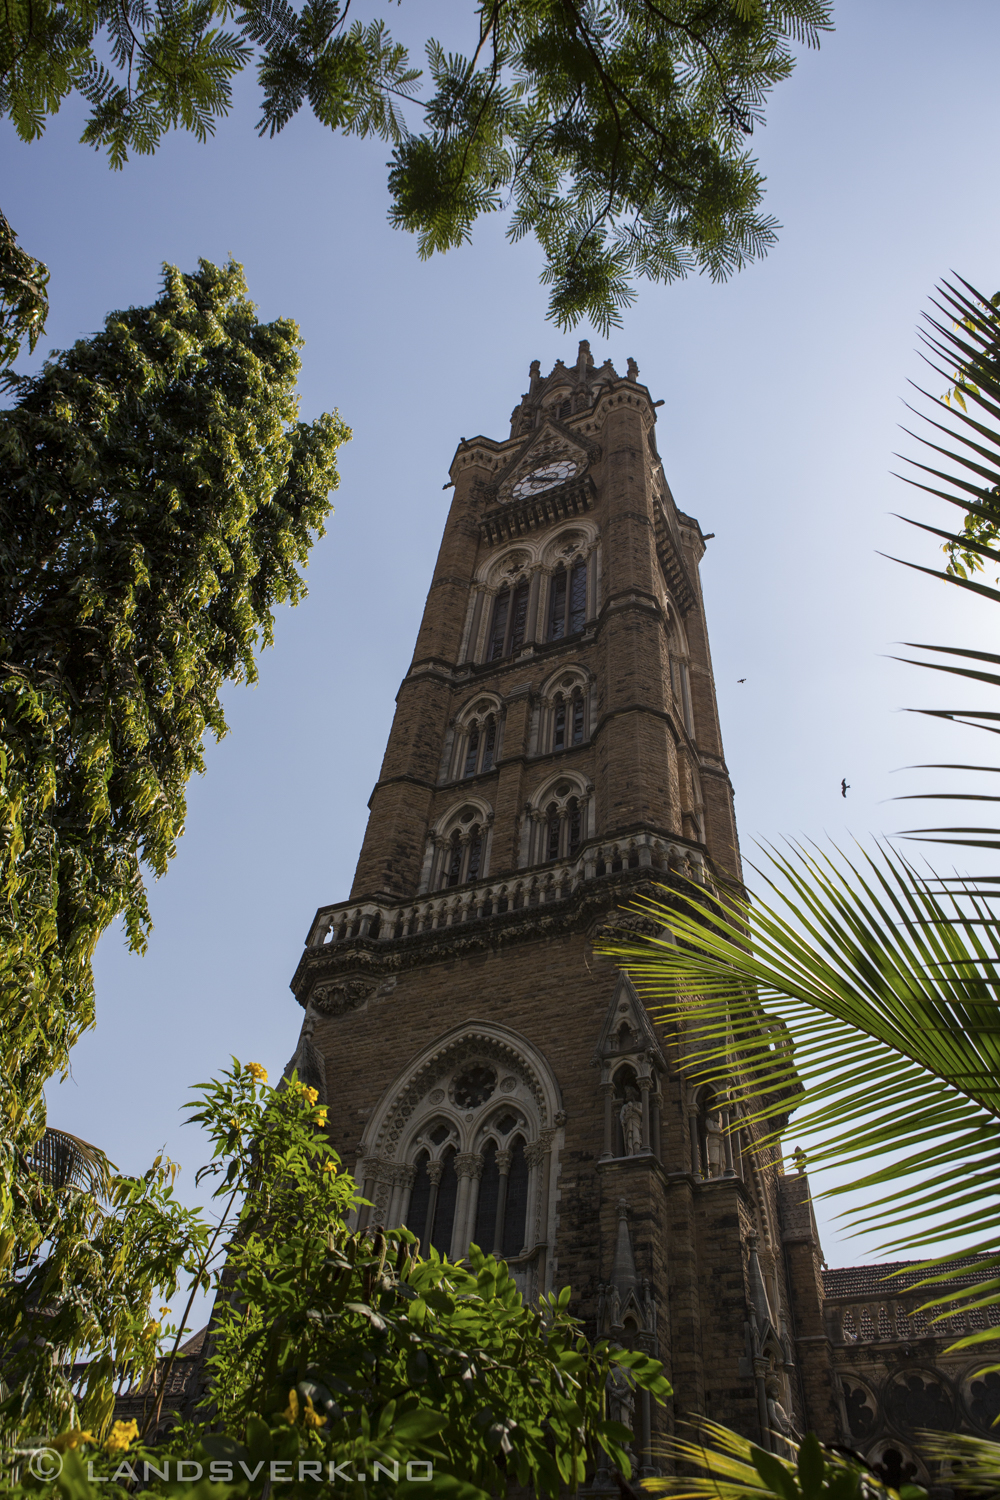 Mumbai, India. 

(Canon EOS 5D Mark III / Canon EF 24-70mm 
f/2.8 L USM)